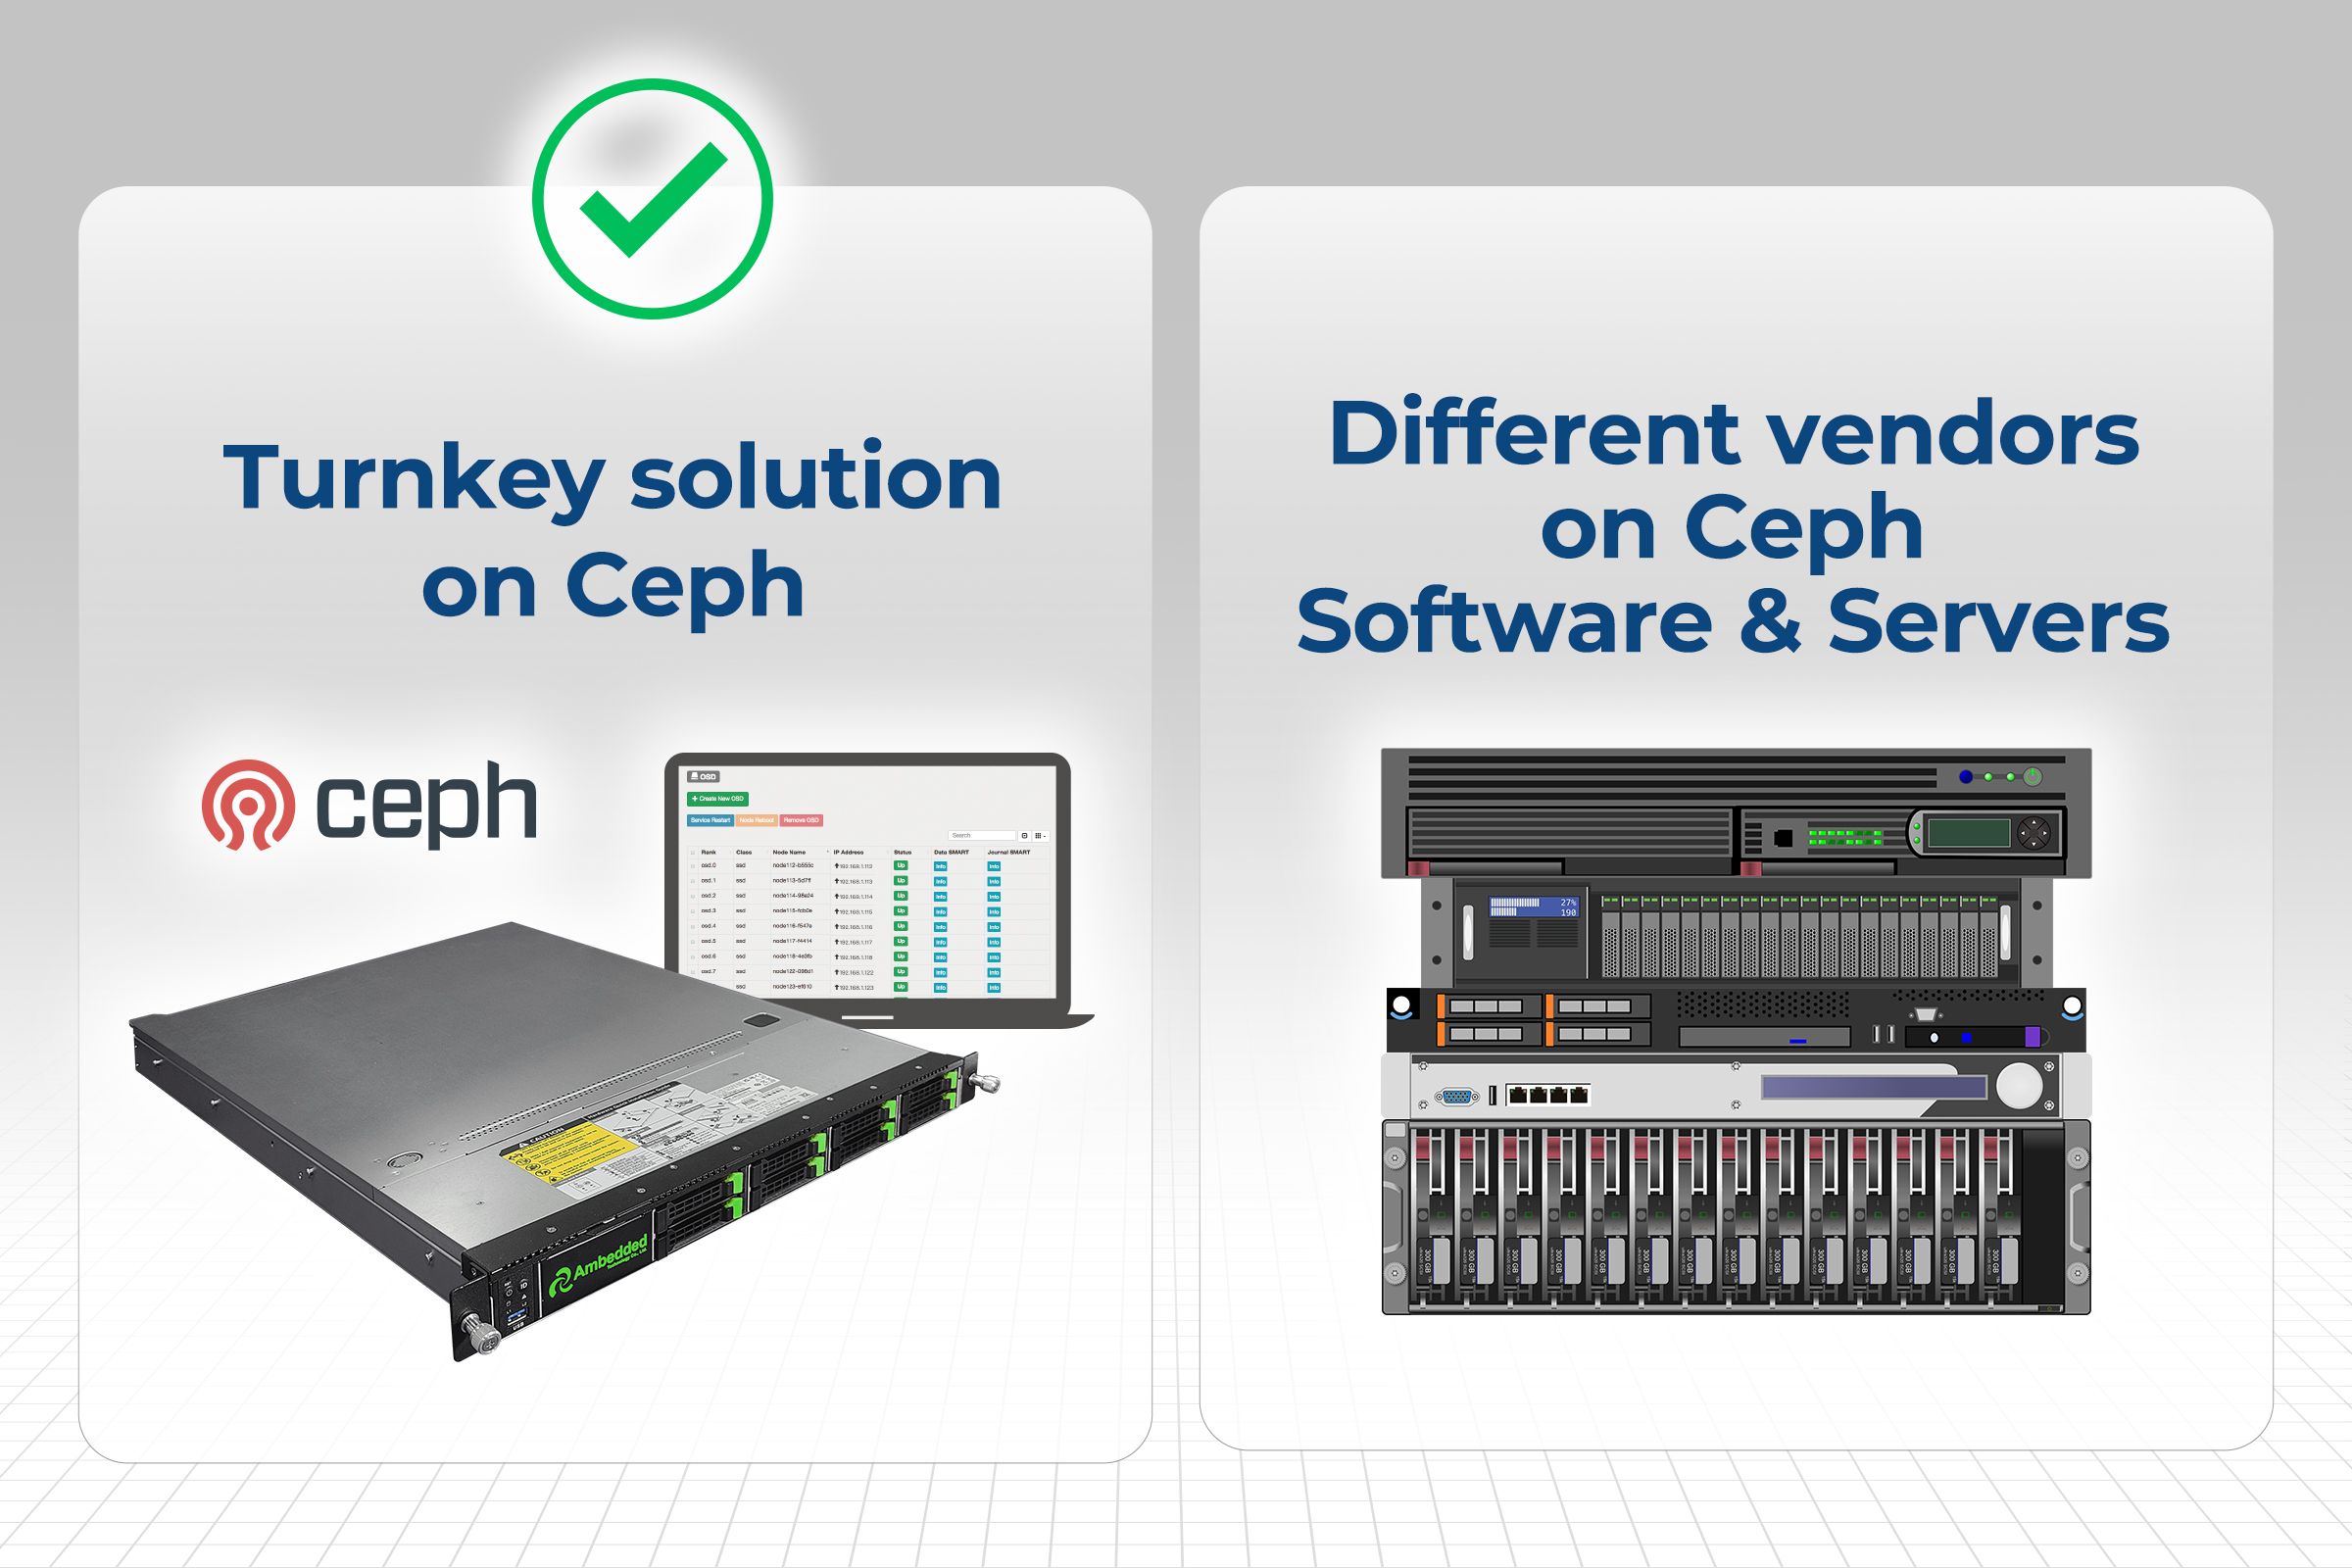 Lý do tại sao giải pháp ceph turnkey (ceph appliance) là lựa chọn tốt hơn so với giải pháp chỉ có phần mềm để chạy trên nhiều nền tảng máy chủ khác nhau.